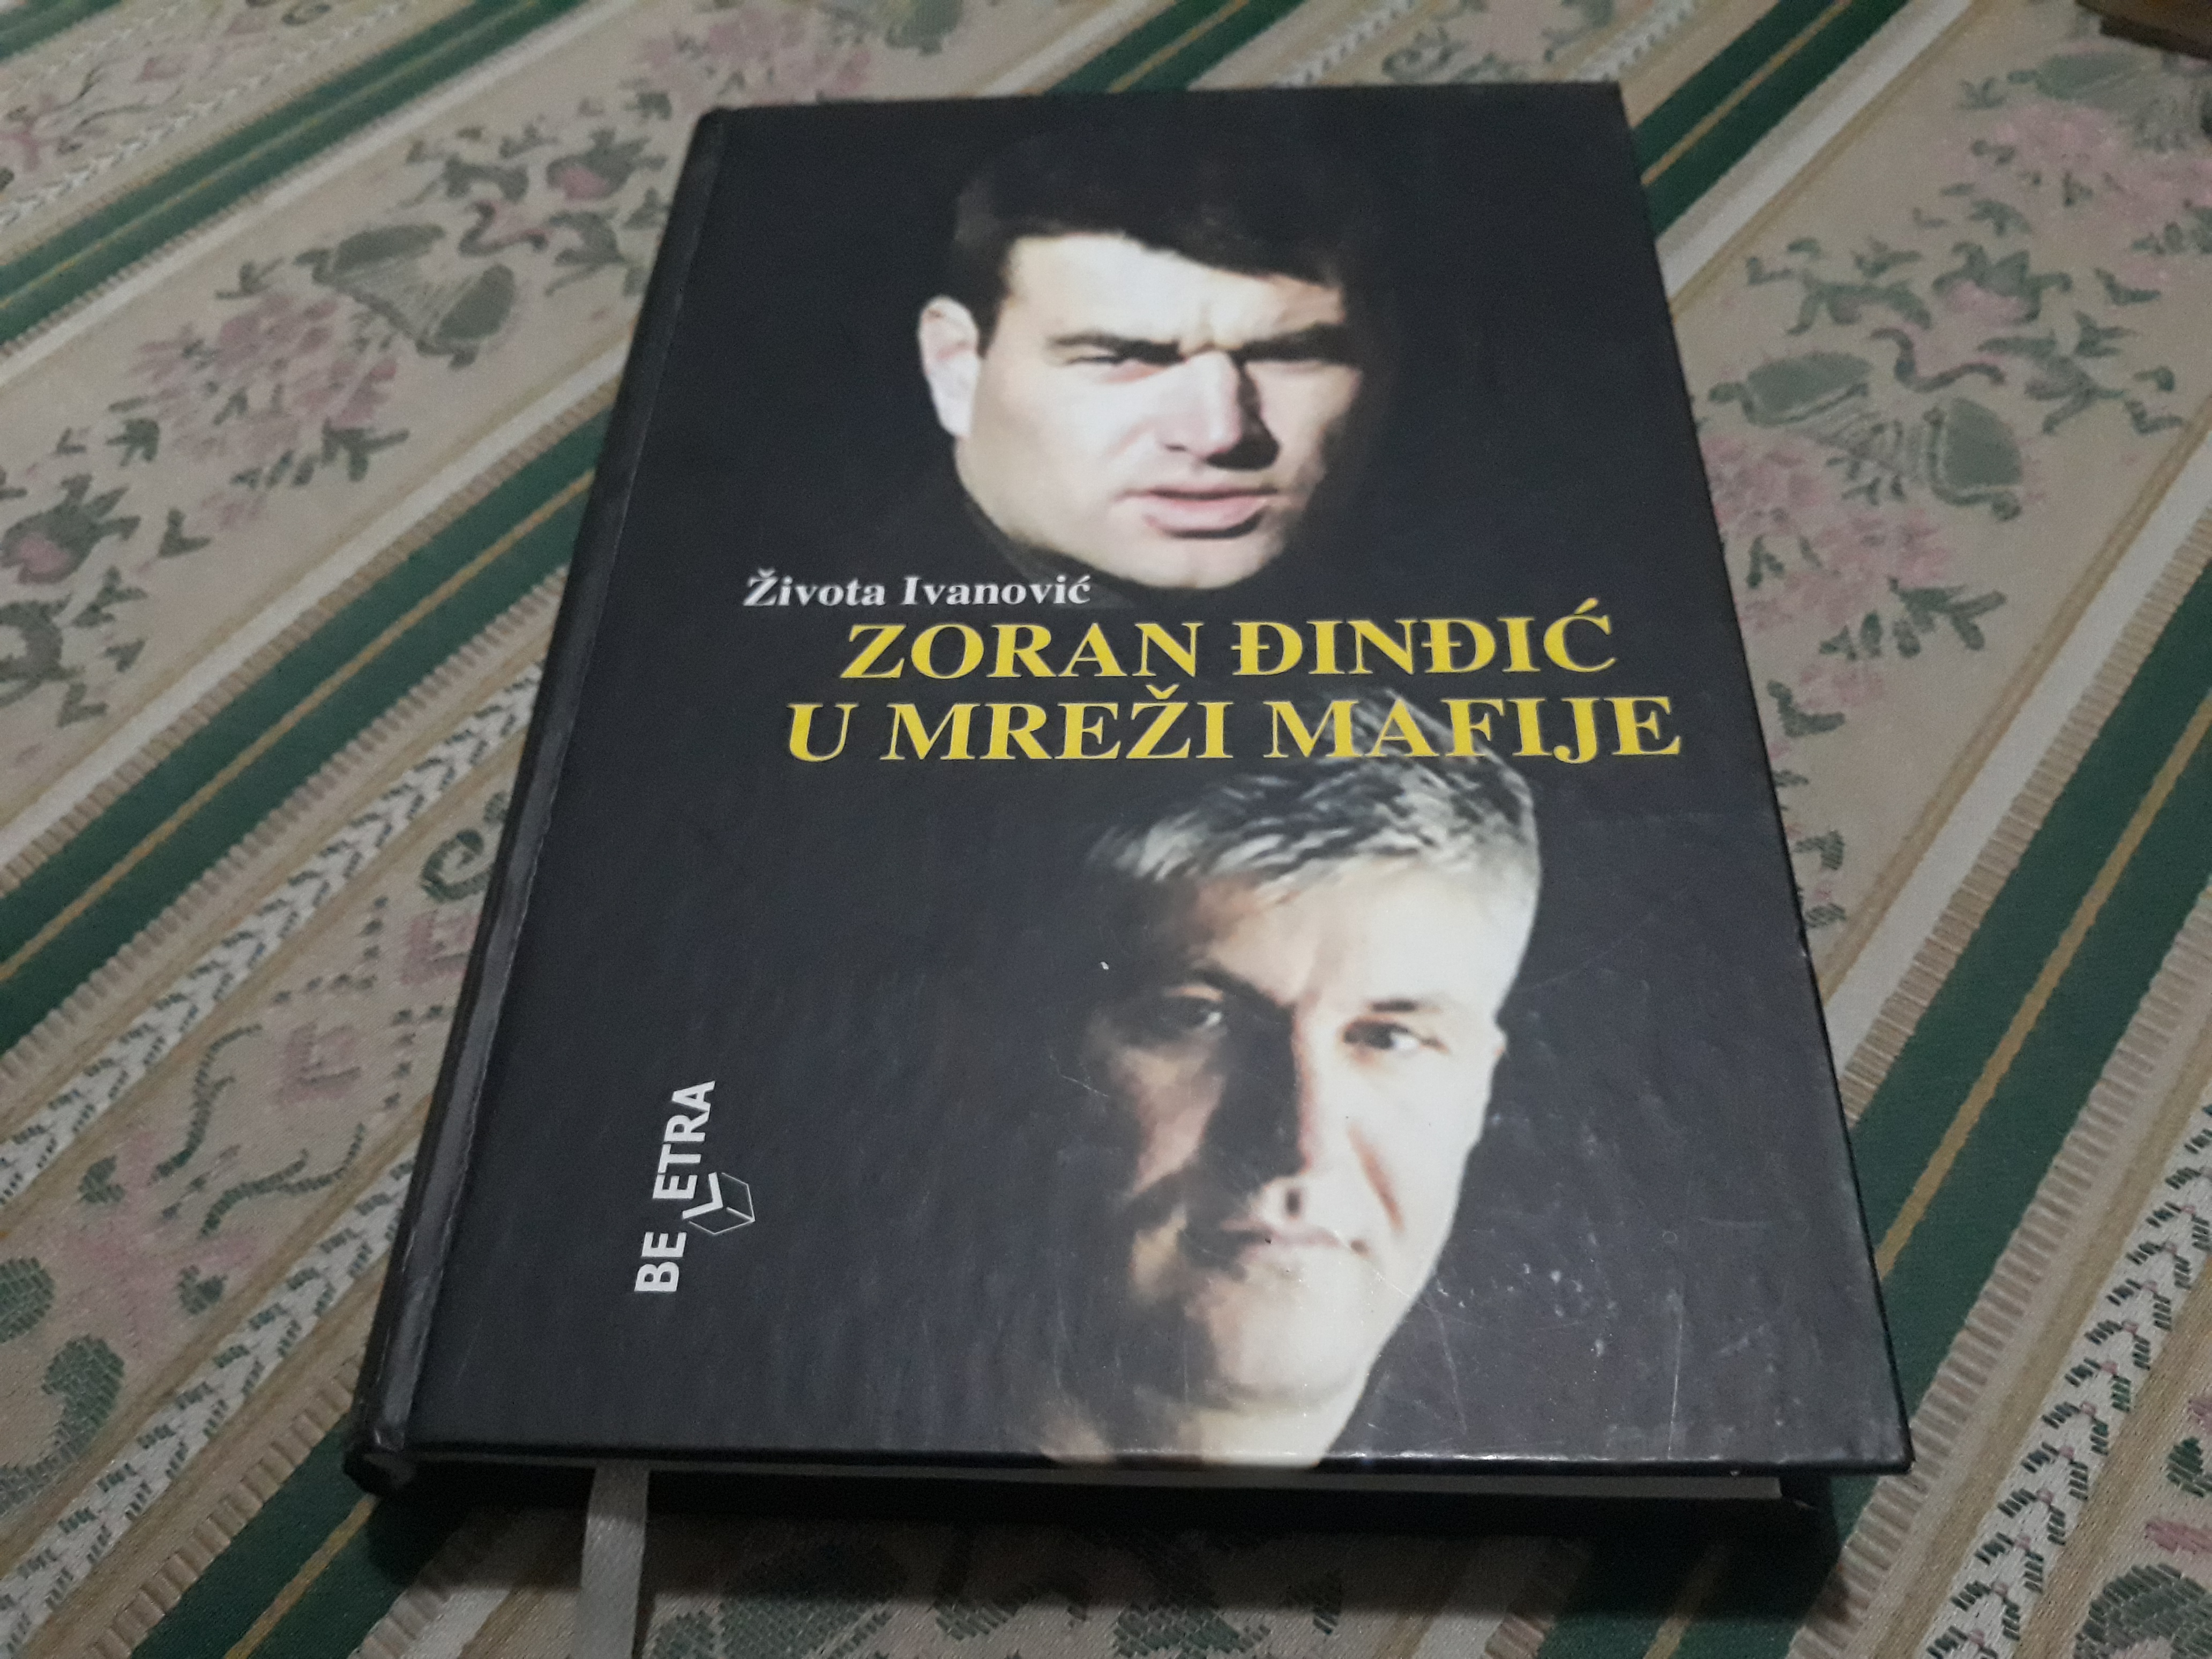 Zoran Đinđić u mreži mafije Života Ivanović